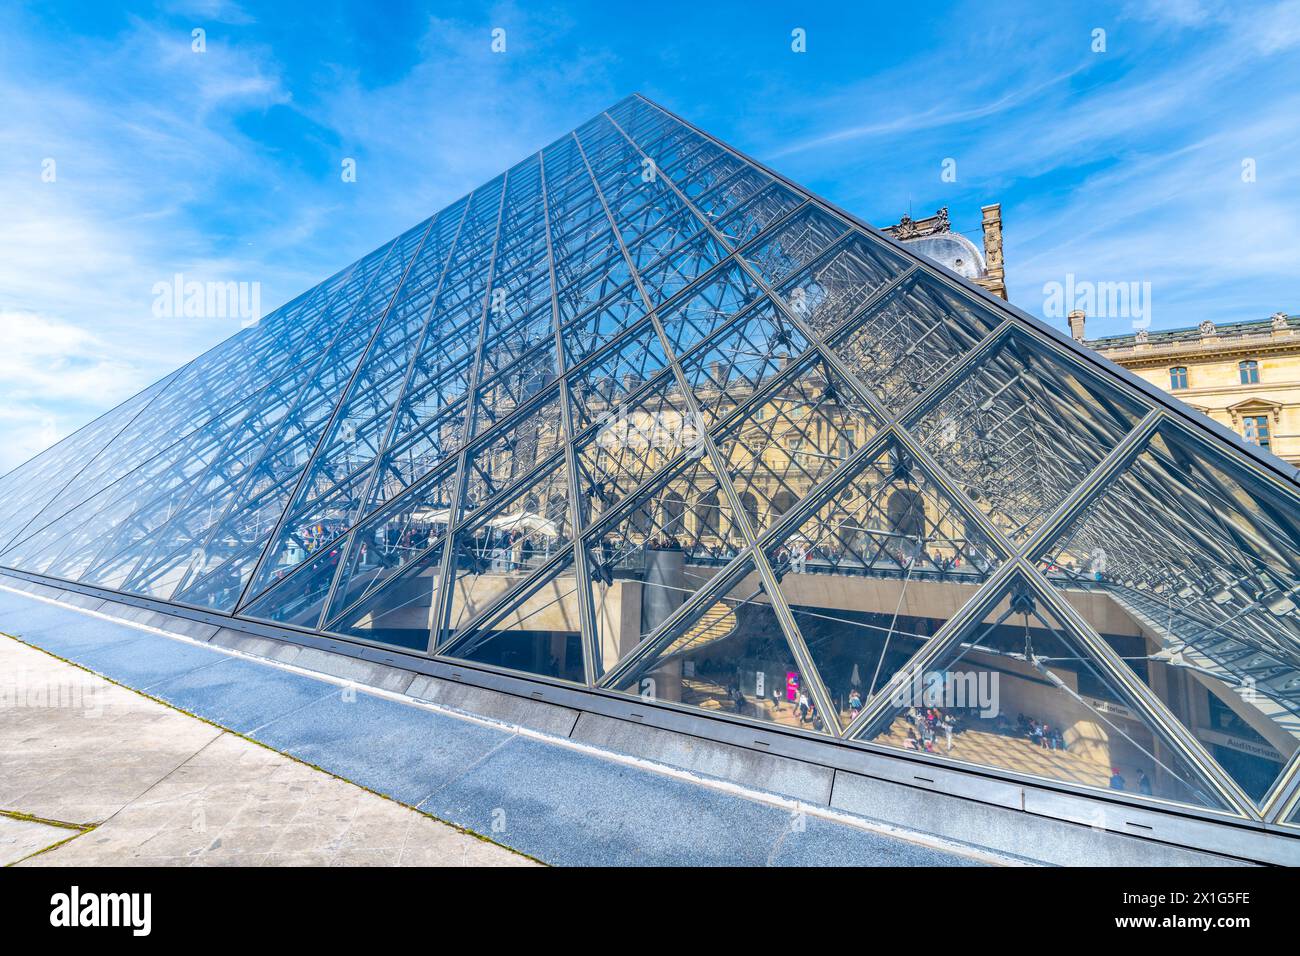 Die ikonische Glaspyramide im Louvre sonnt sich unter einem klaren blauen Himmel. Paris, Frankreich Stockfoto